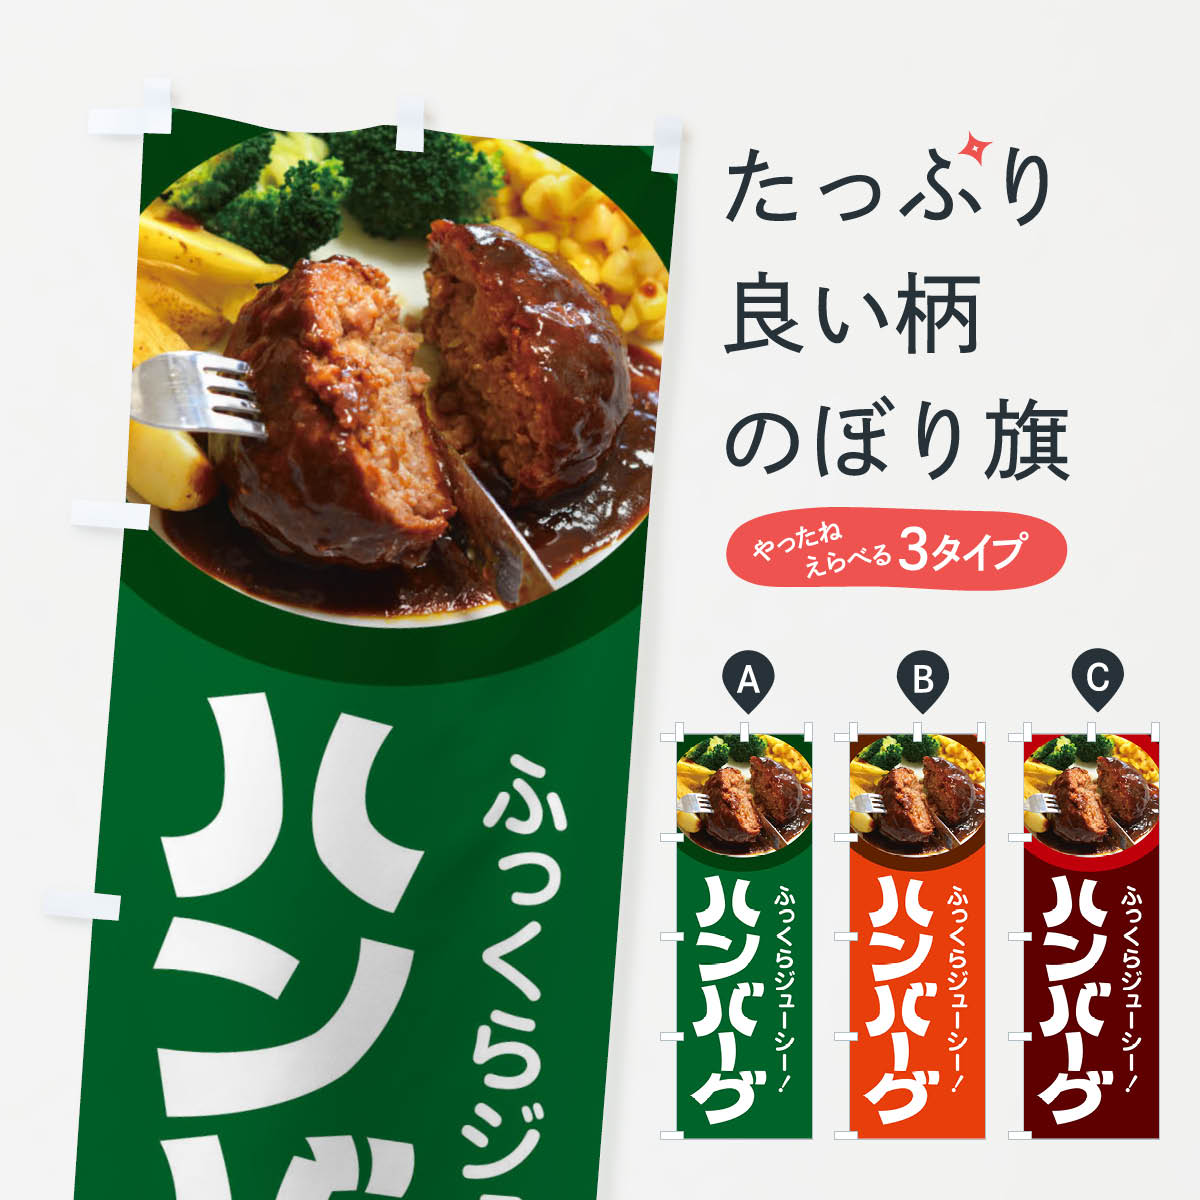 【全国送料360円】 のぼり旗 ハンバーグ・洋食・ひき肉・肉汁のぼり 47X4 グッズプロ